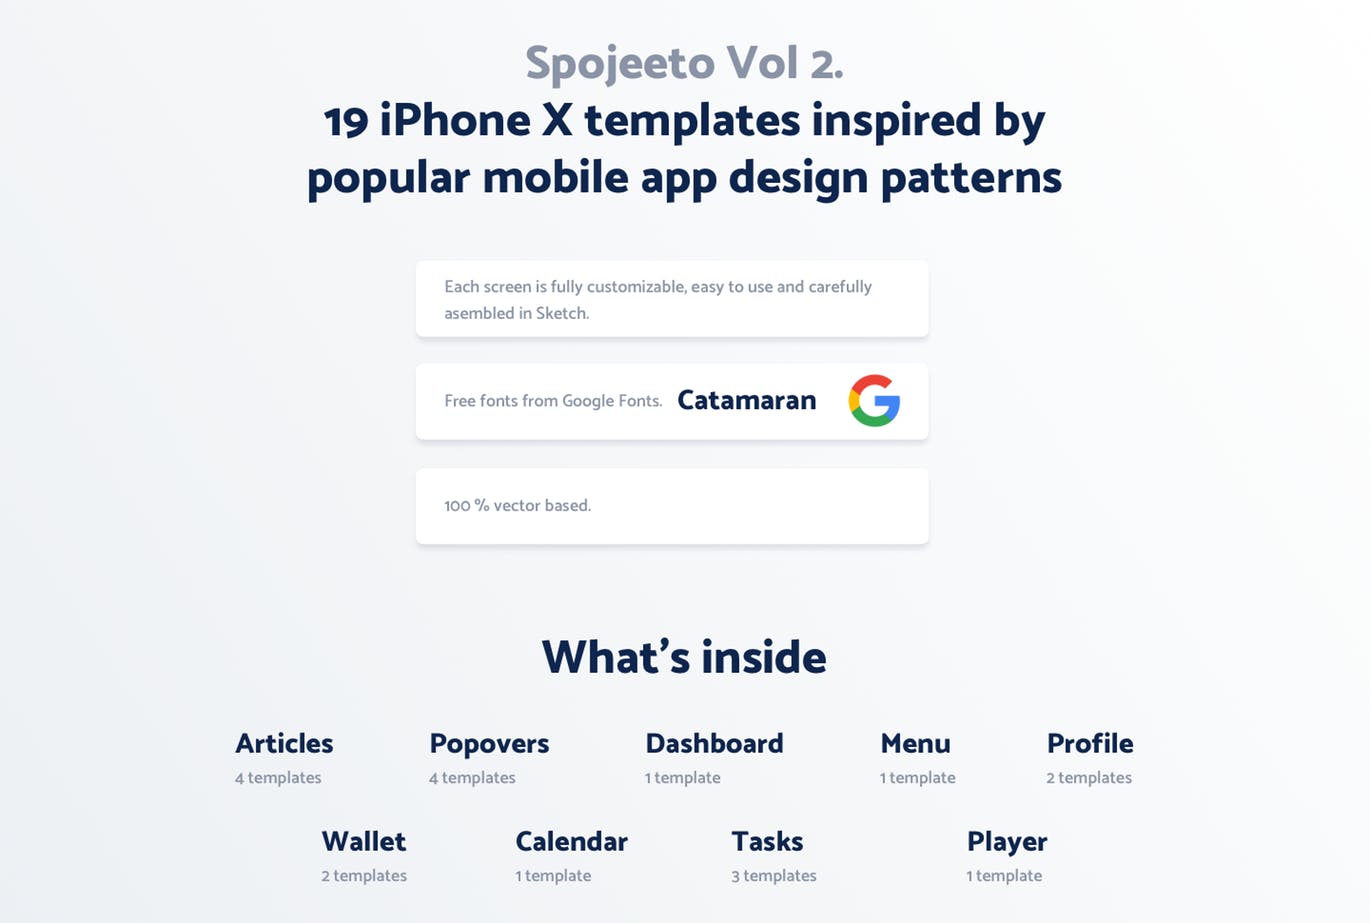 极简主义设计风格APP应用UI设计蚂蚁素材精选套件v2 Vol. 2 – Spojeeto Mobile App UI Kit插图(1)